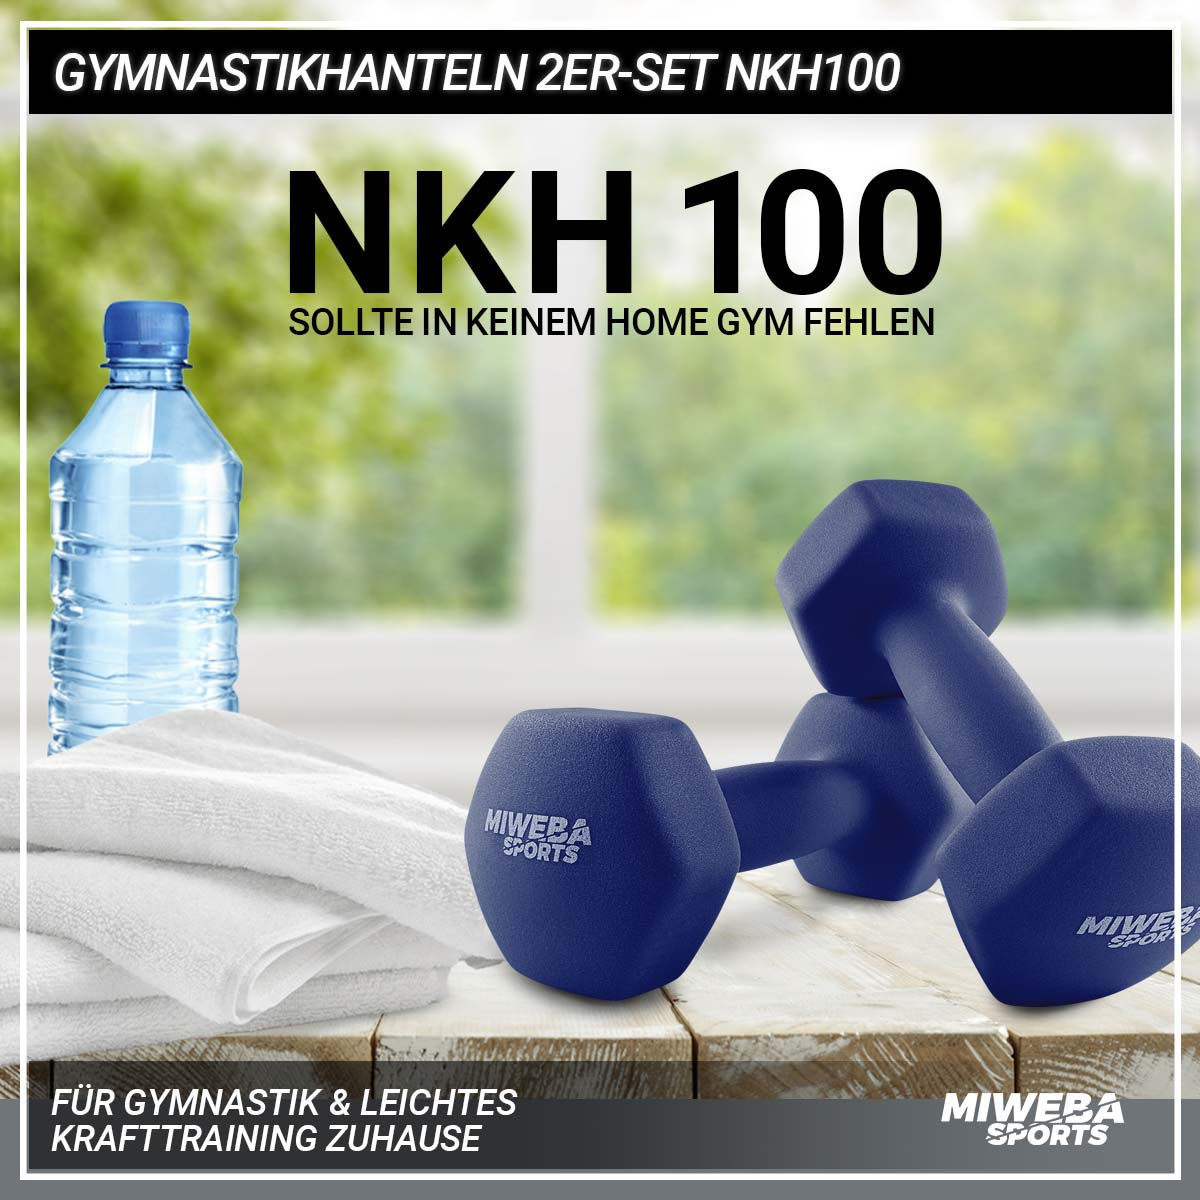 MIWEBA SPORTS Gymnastikhanteln 2er NKH100 Königsblau Set Kurzhantel